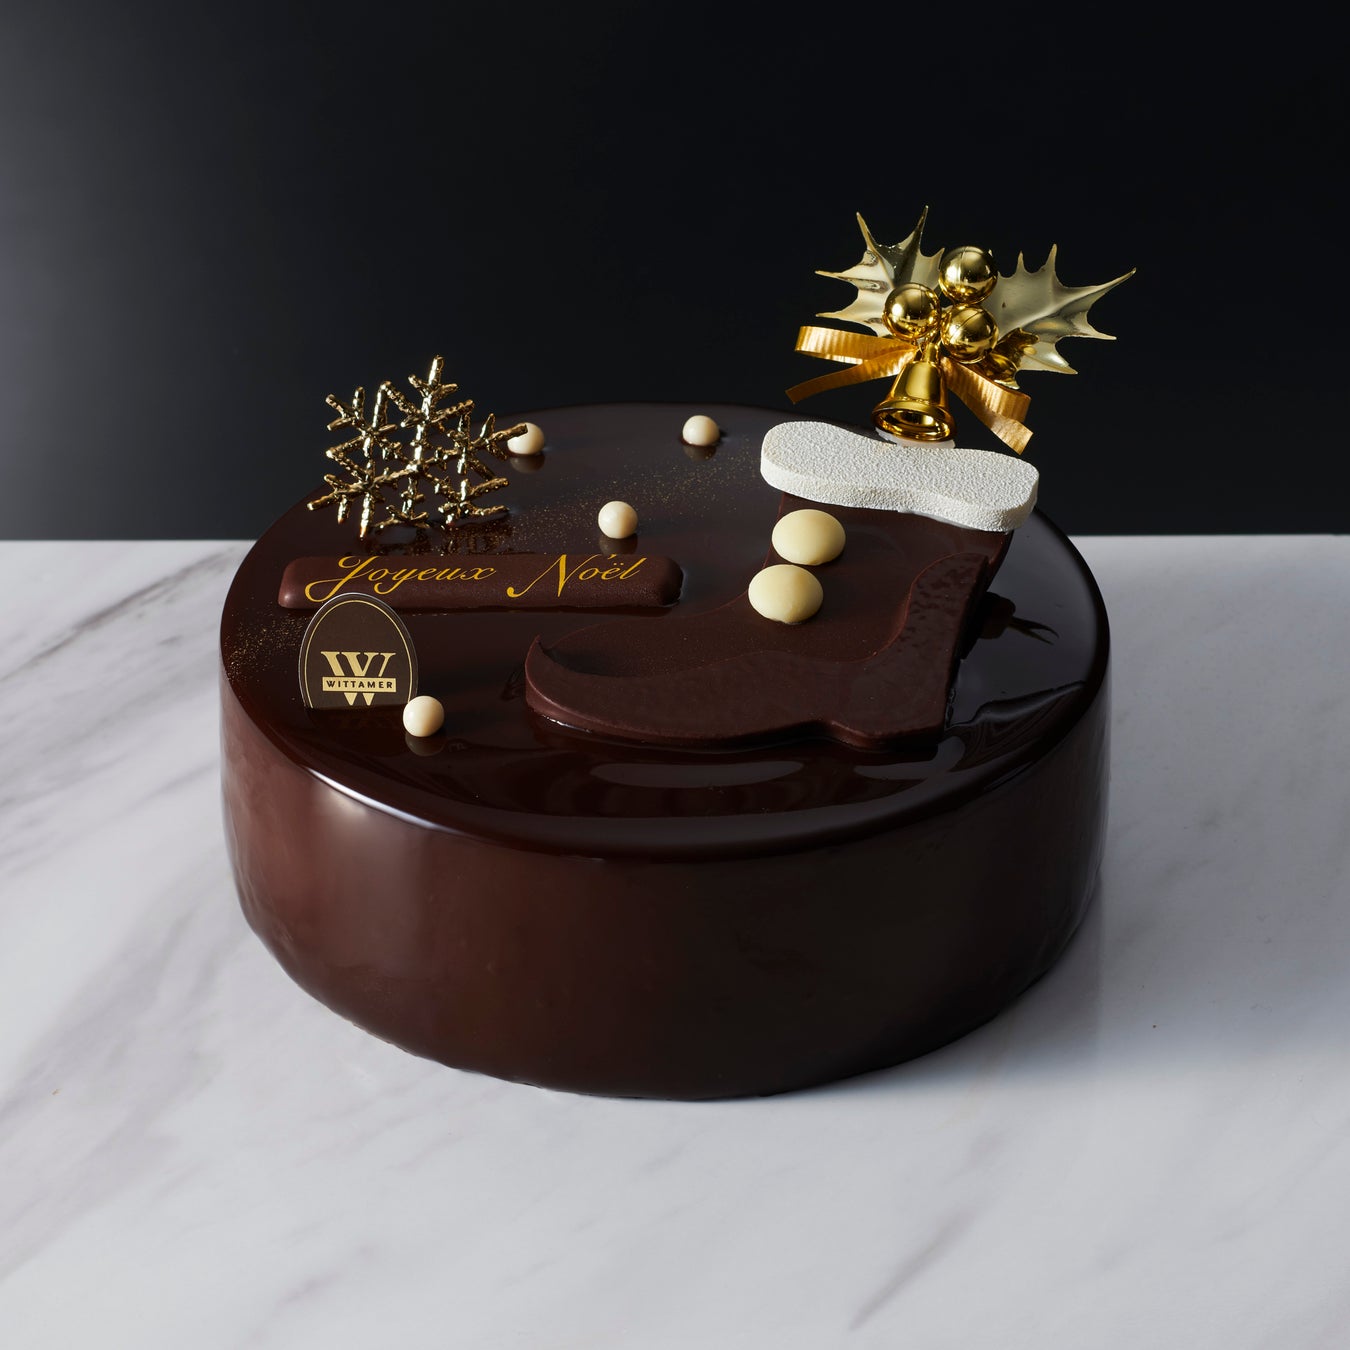 ベルギー王室御用達チョコレートブランド「ヴィタメール」がお届けする2022年クリスマスケーキコレクション10月中旬よりご予約受付開始